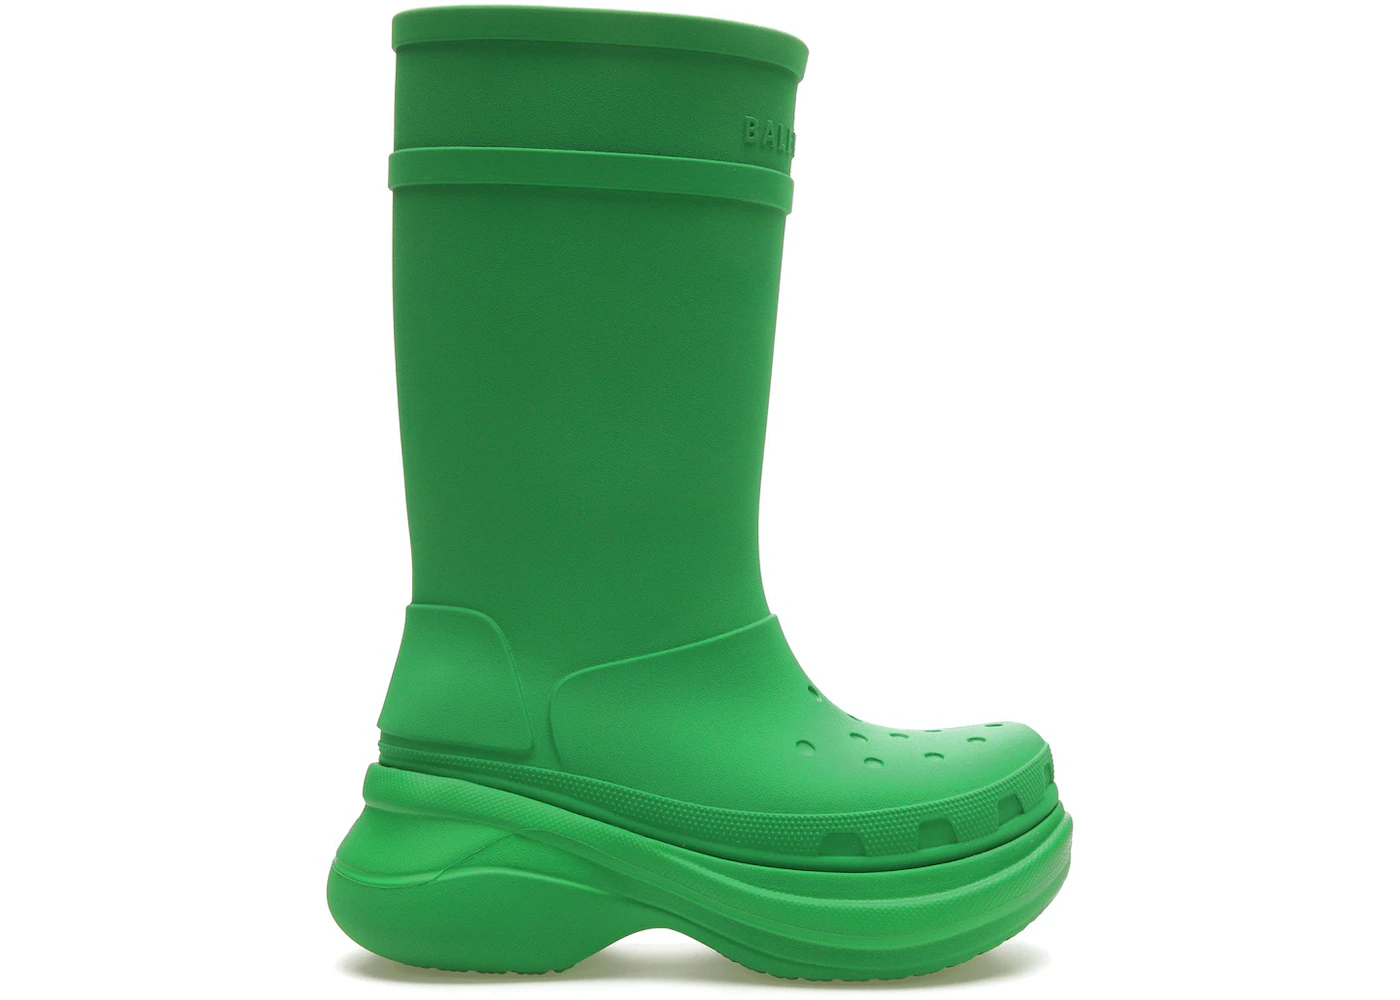 Balenciaga x Crocs Boot Bright Green Men's - Sneakers - US